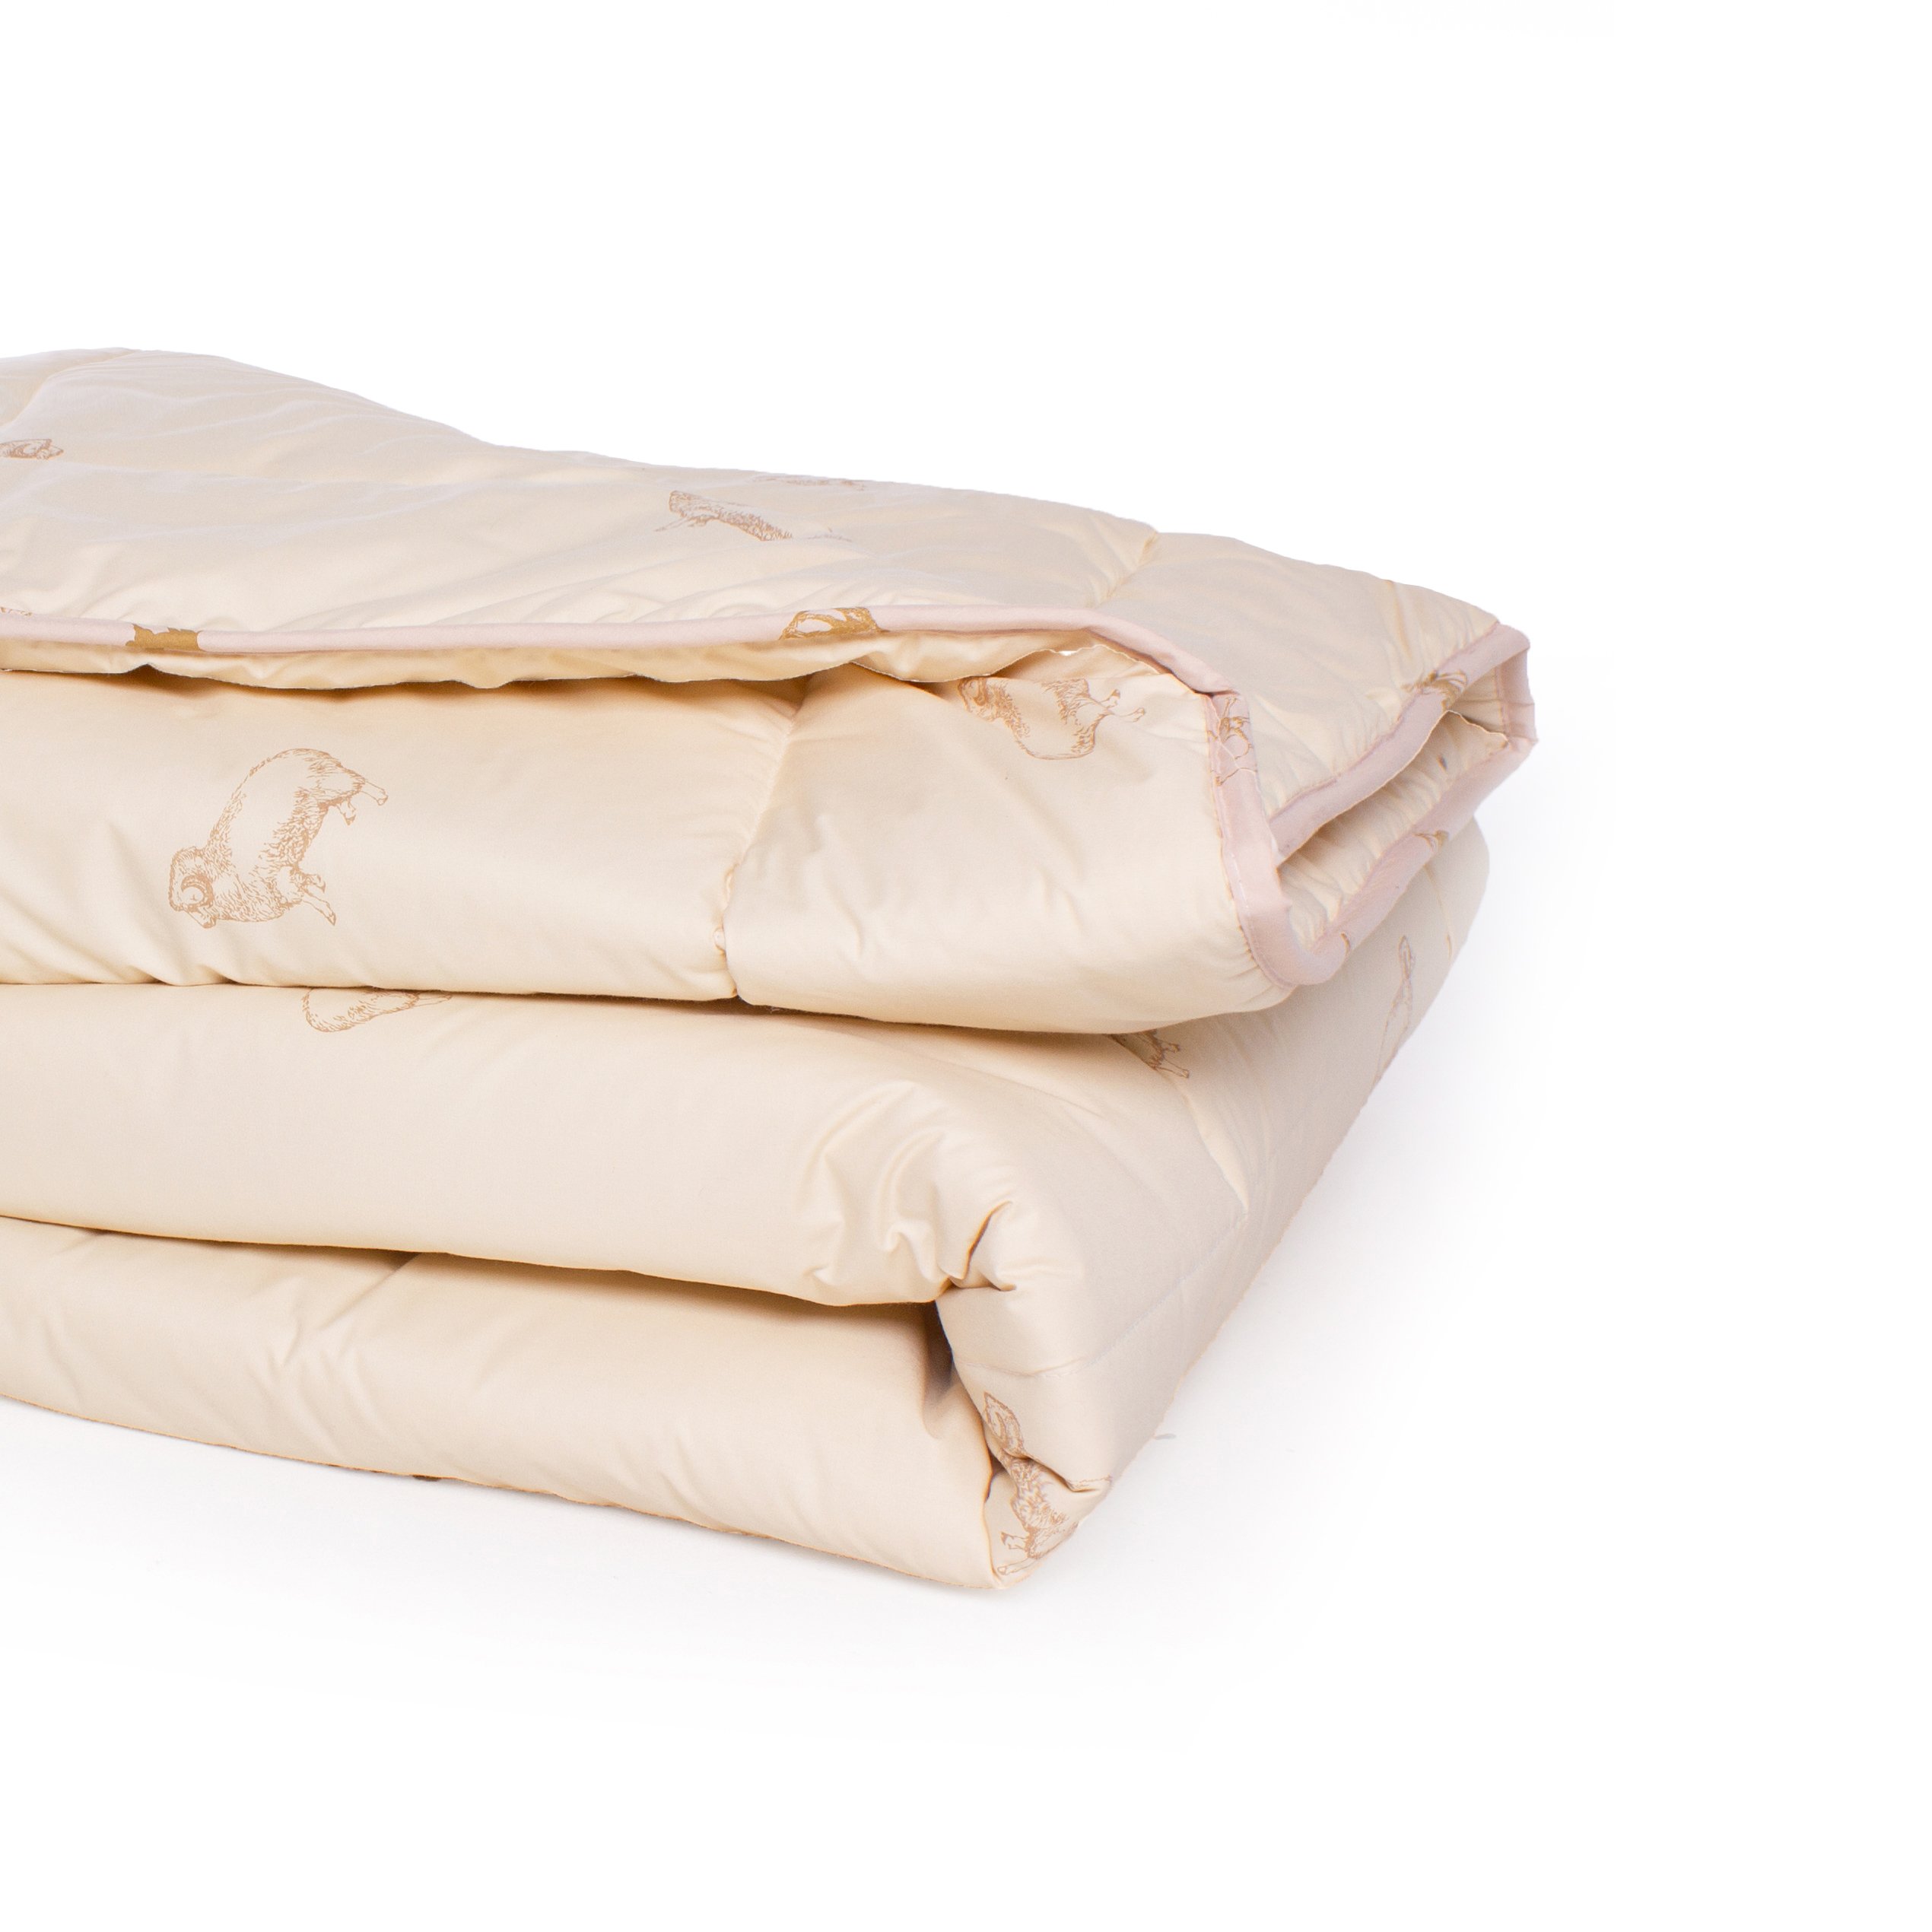 Одеяло шерстяное MirSon Gold Camel №024, зимнее, 172x205 см, кремовое - фото 3